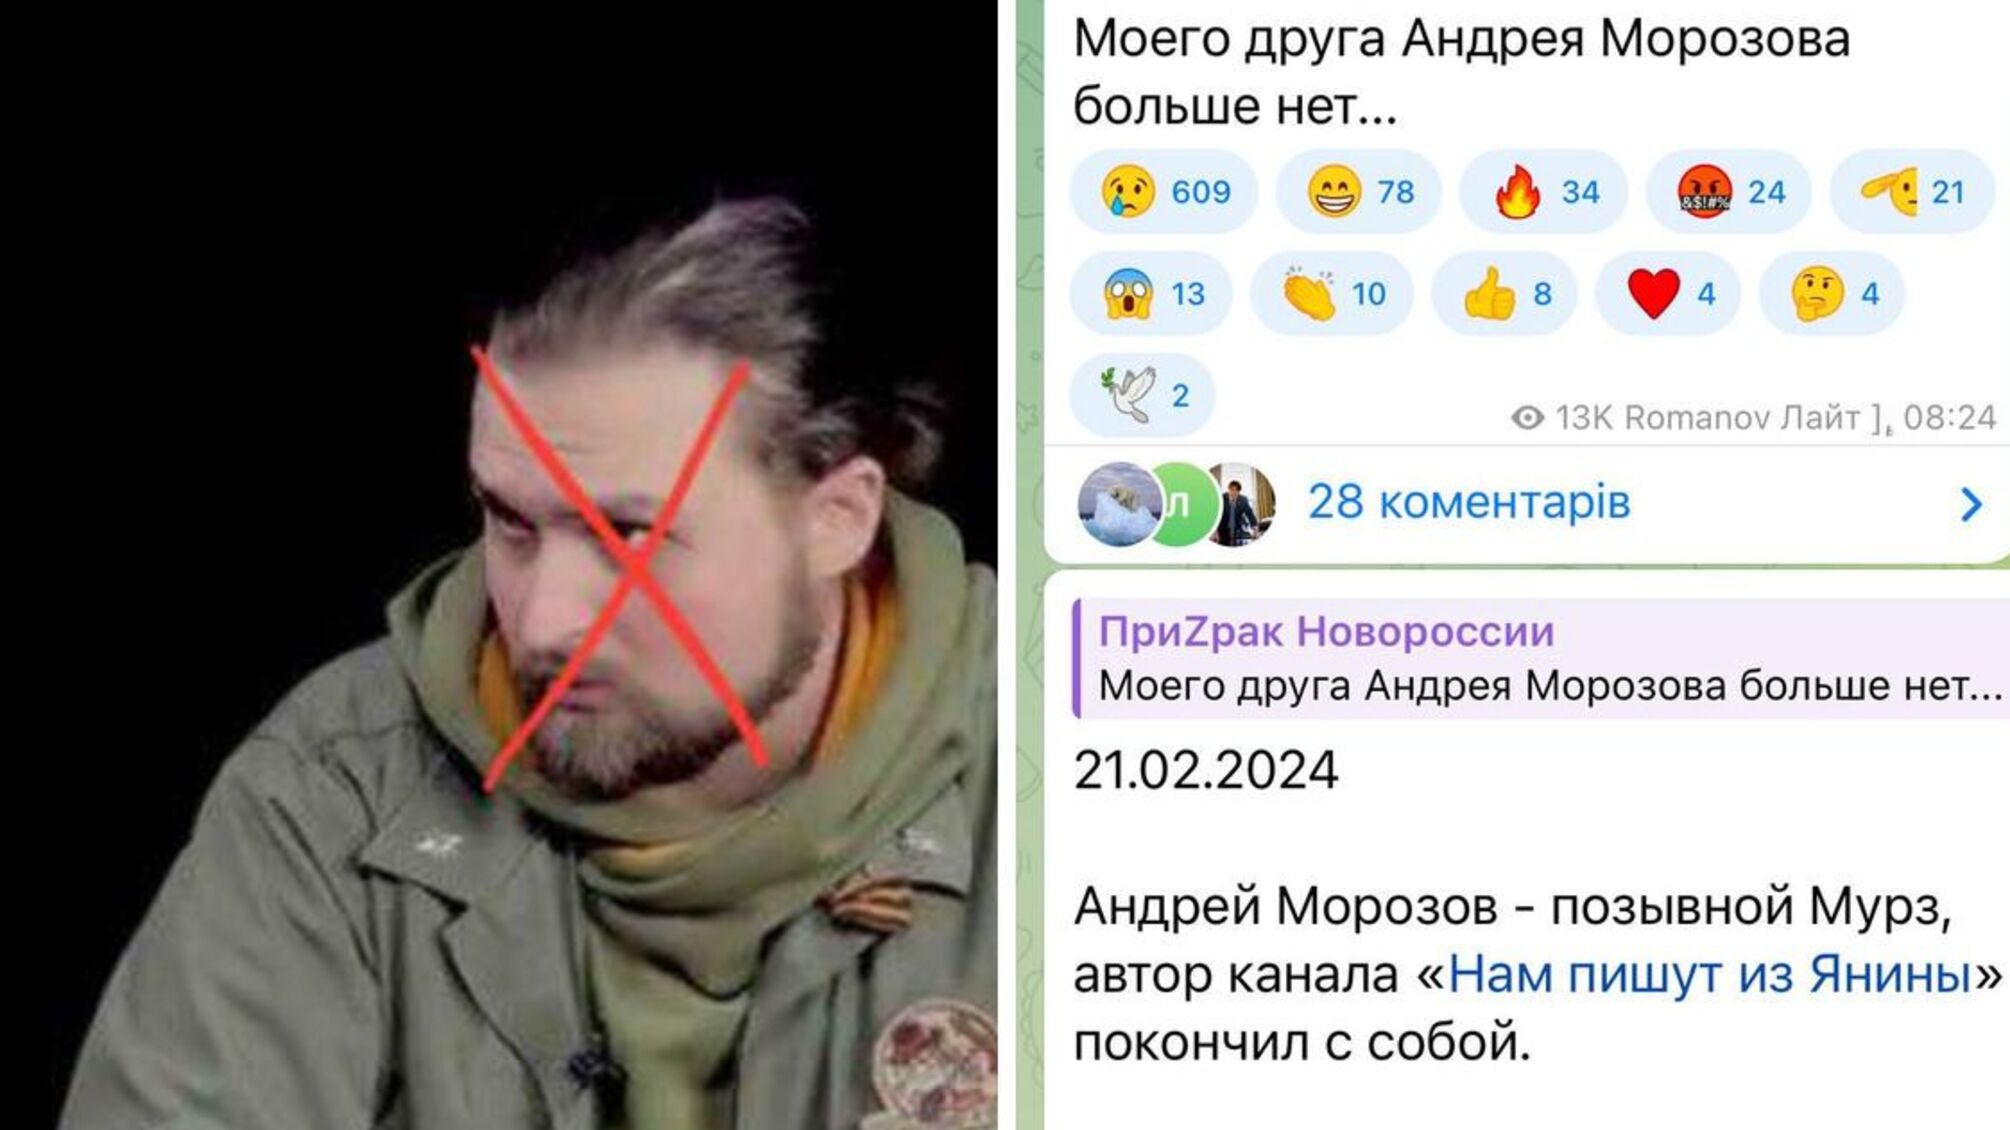 Російський пропагандист 'Мурз' застрелився після розкриття втрат у бою за Авдіївку'